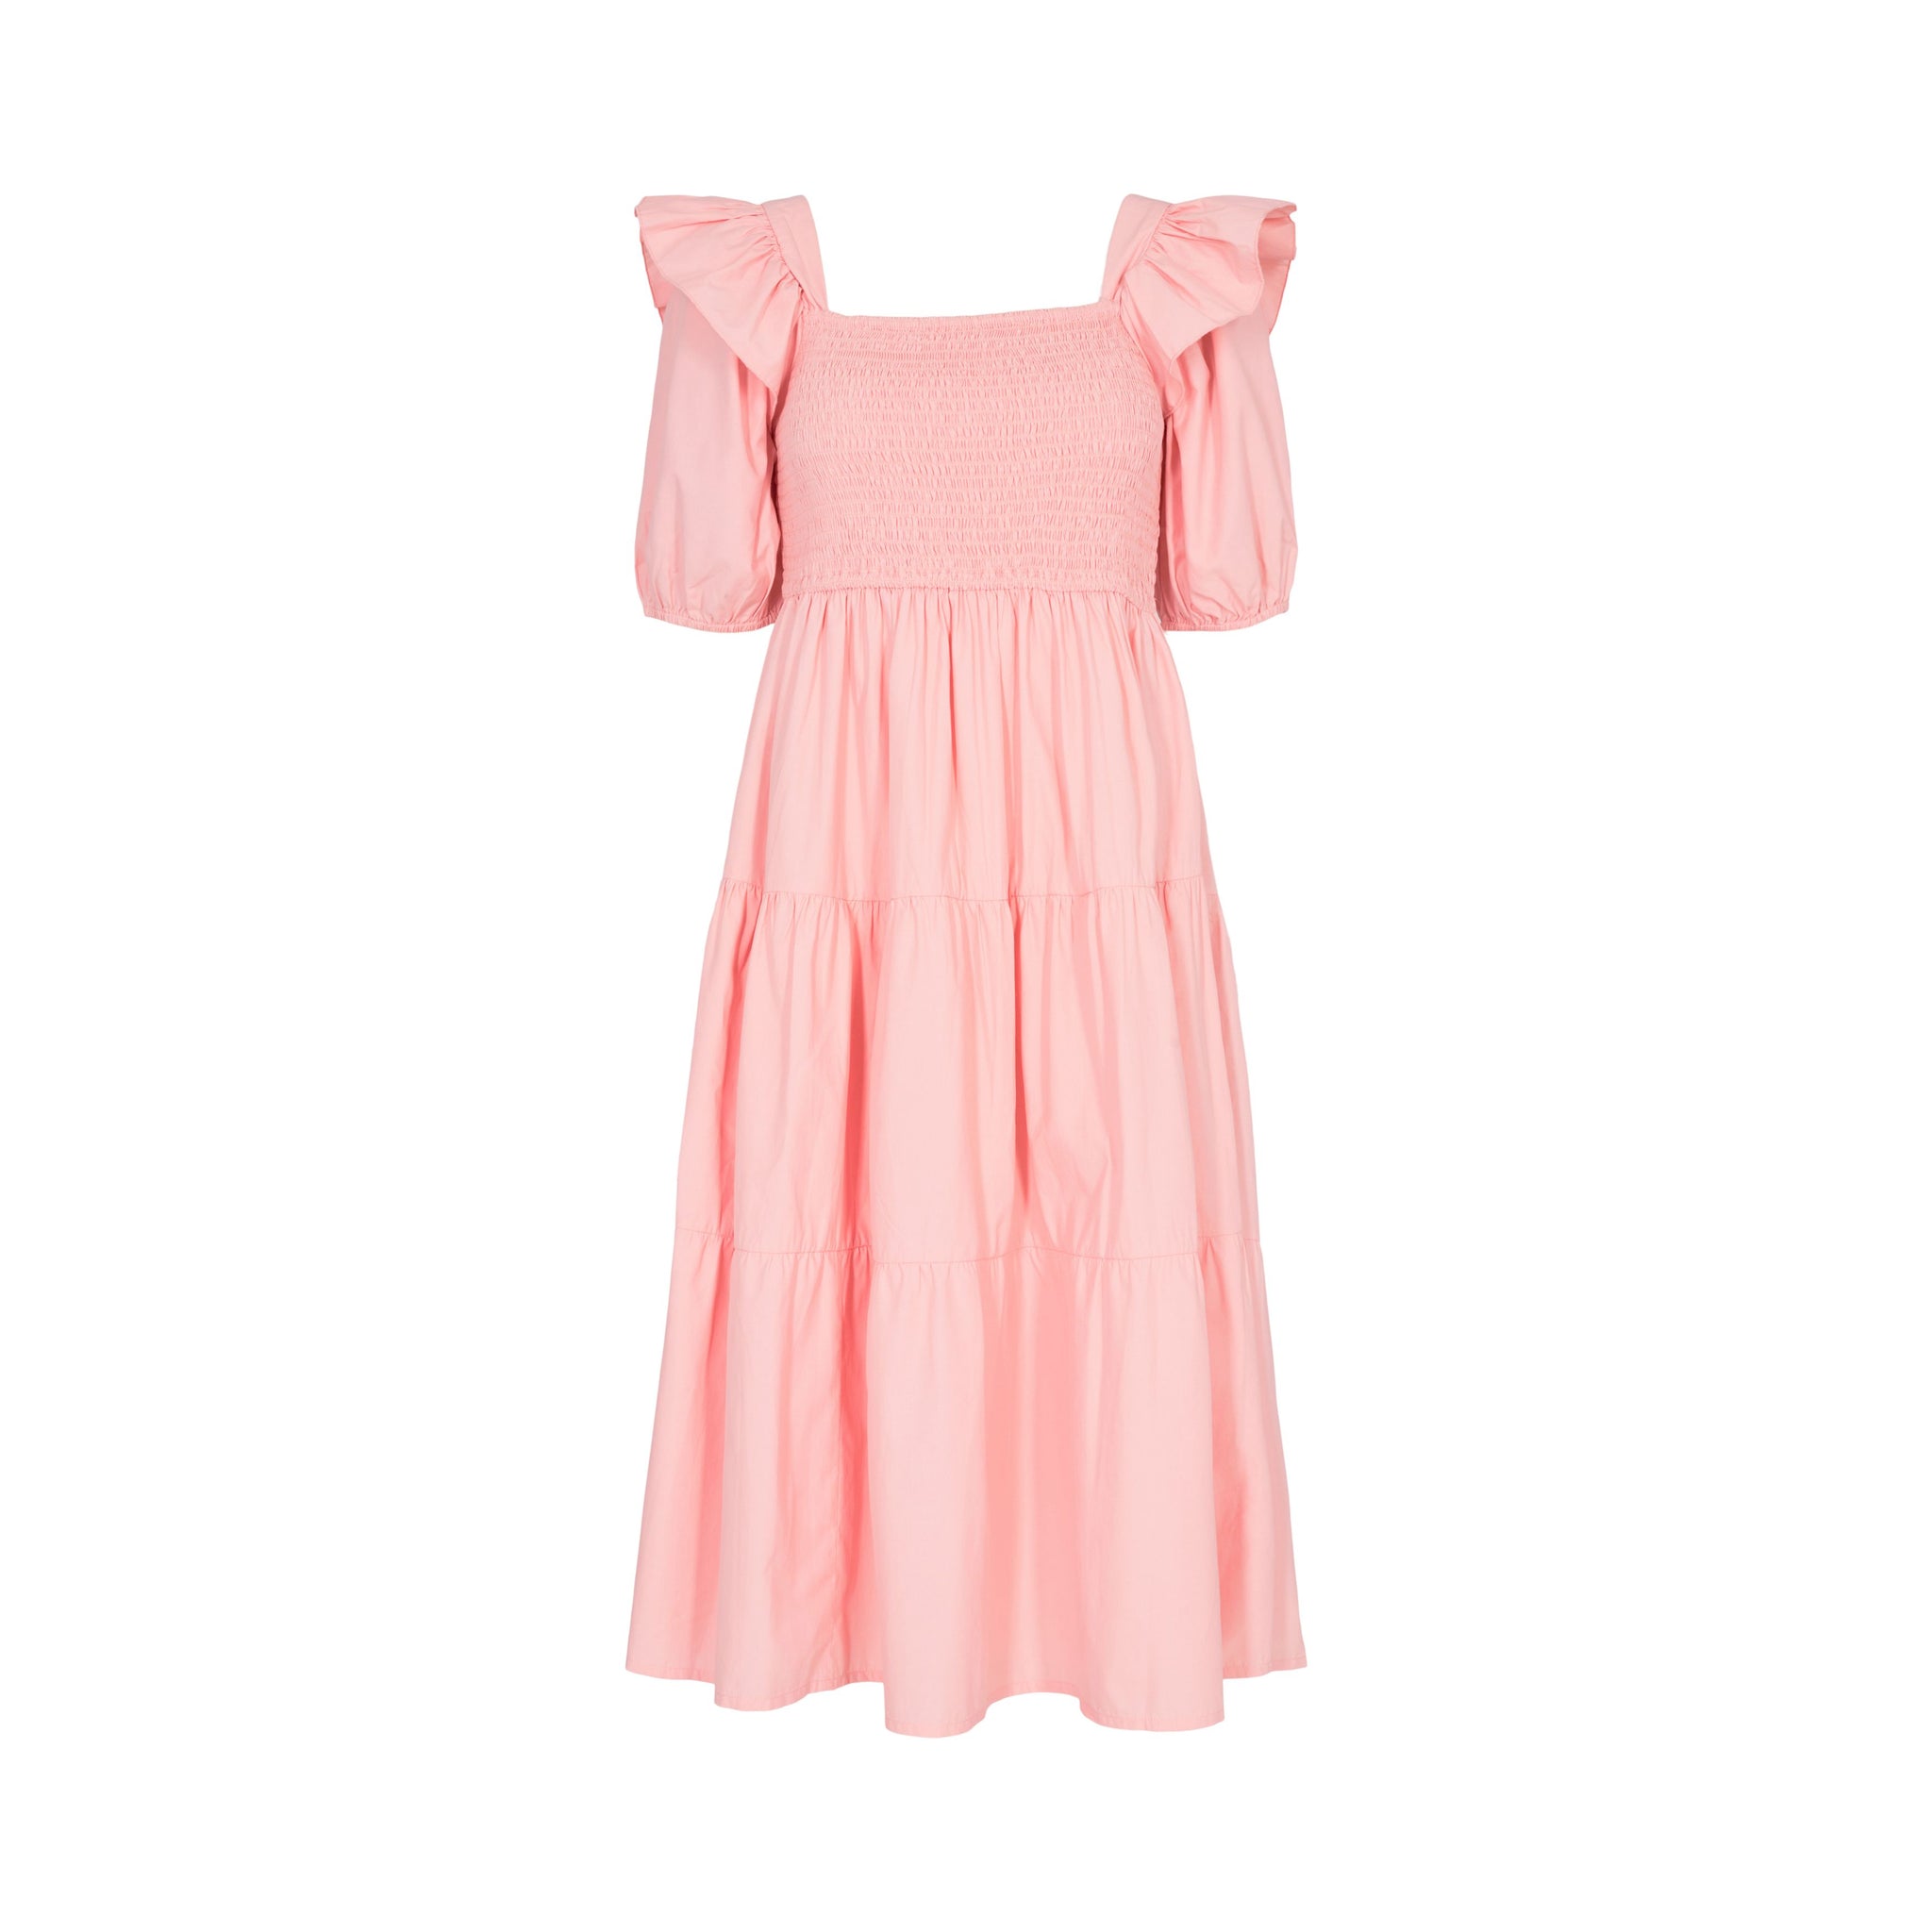 Sofie Schnoor - Dress S222336 - Coral Pink